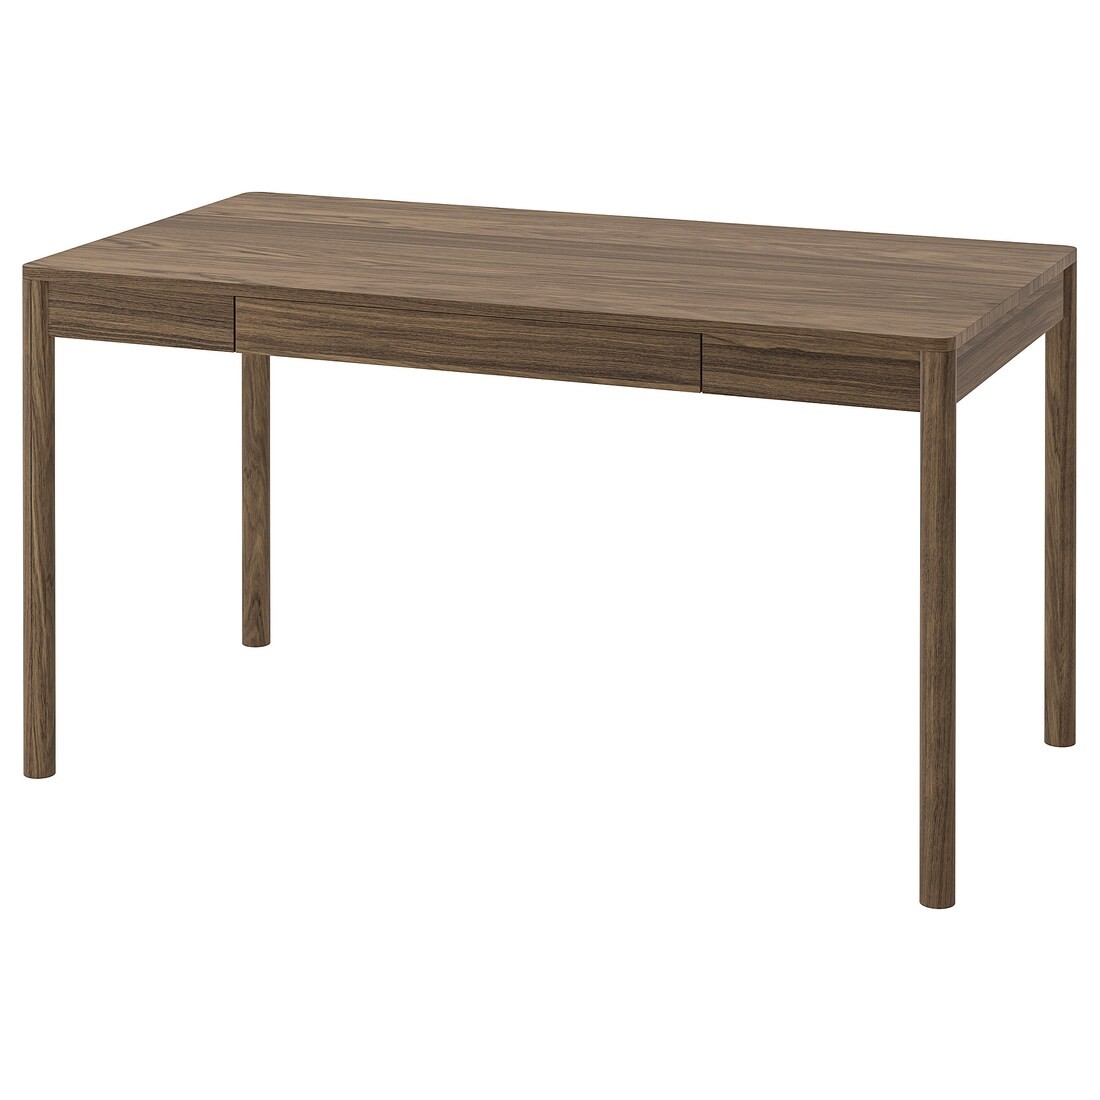 IKEA TONSTAD Письмовий стіл, коричневий дубовий шпон, 140x75 см 20538212 205.382.12